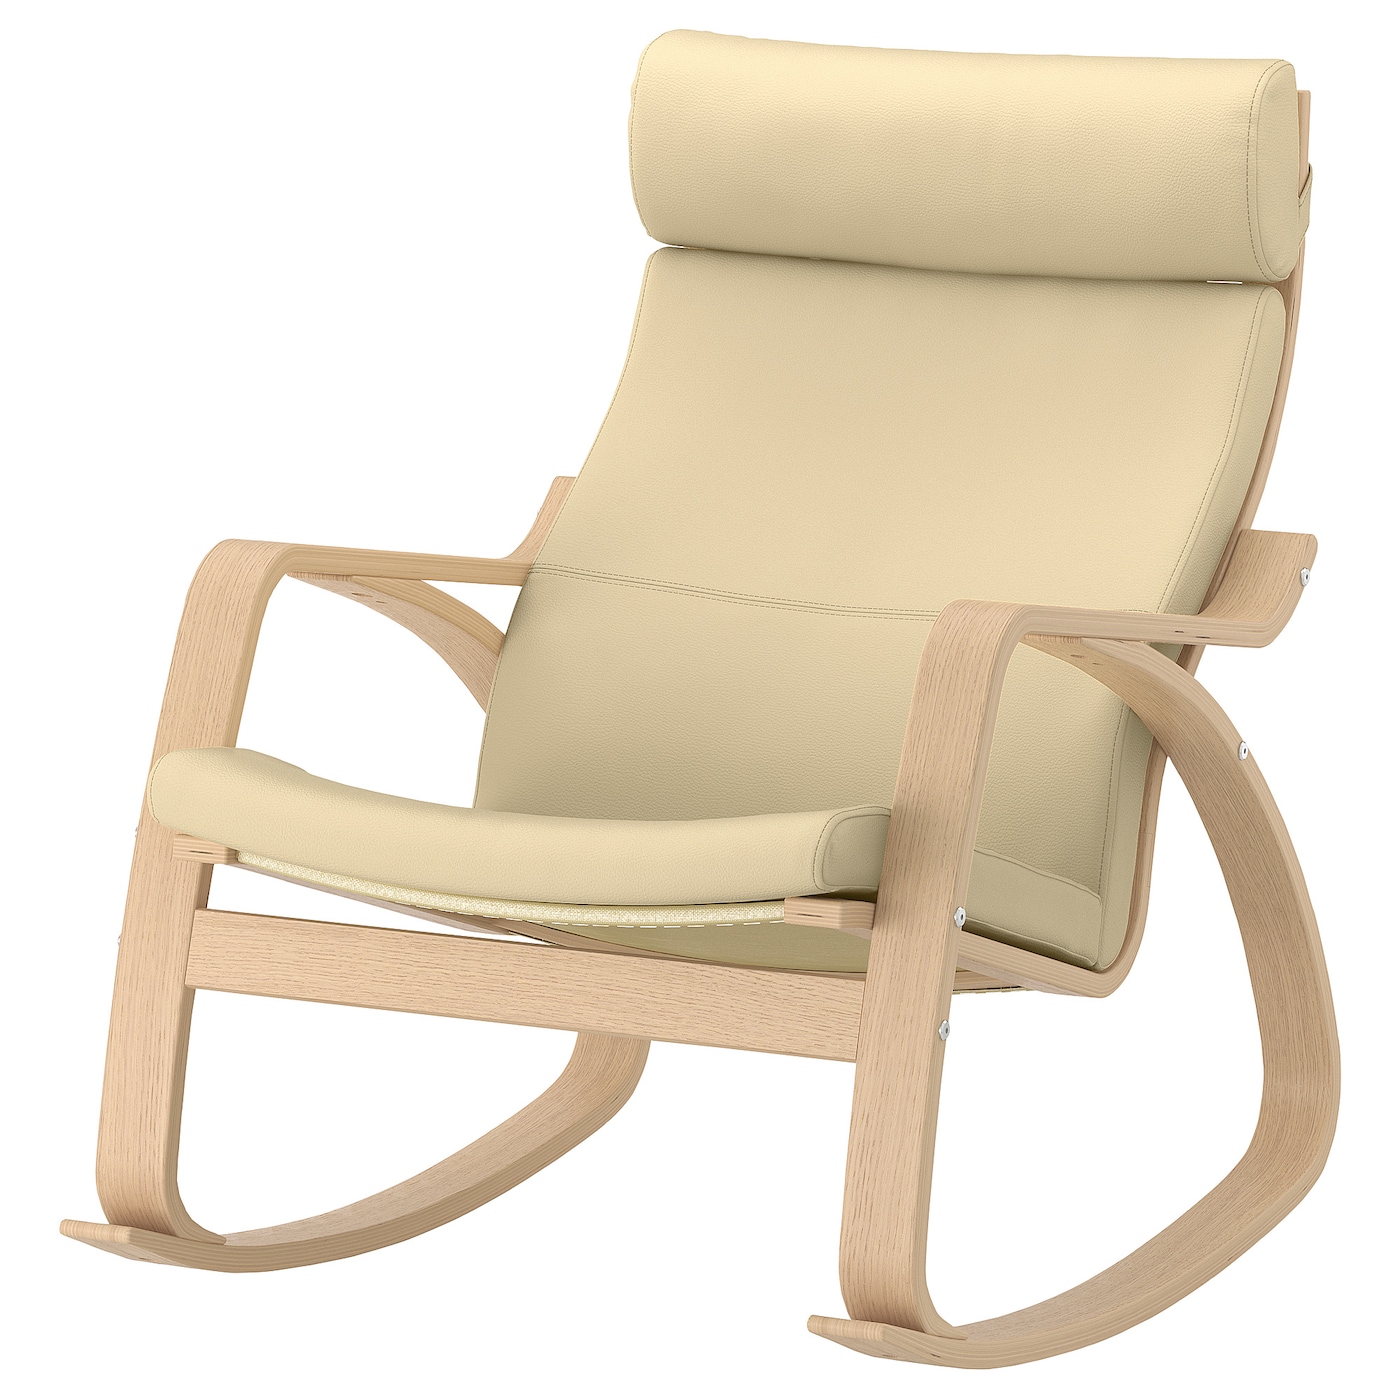 ПОЭНГ Кресло-качалка, дубовый шпон светлый/Глянец натуральный белый POÄNG IKEA кресло качалка tc 65x61x74 см белый натуральный